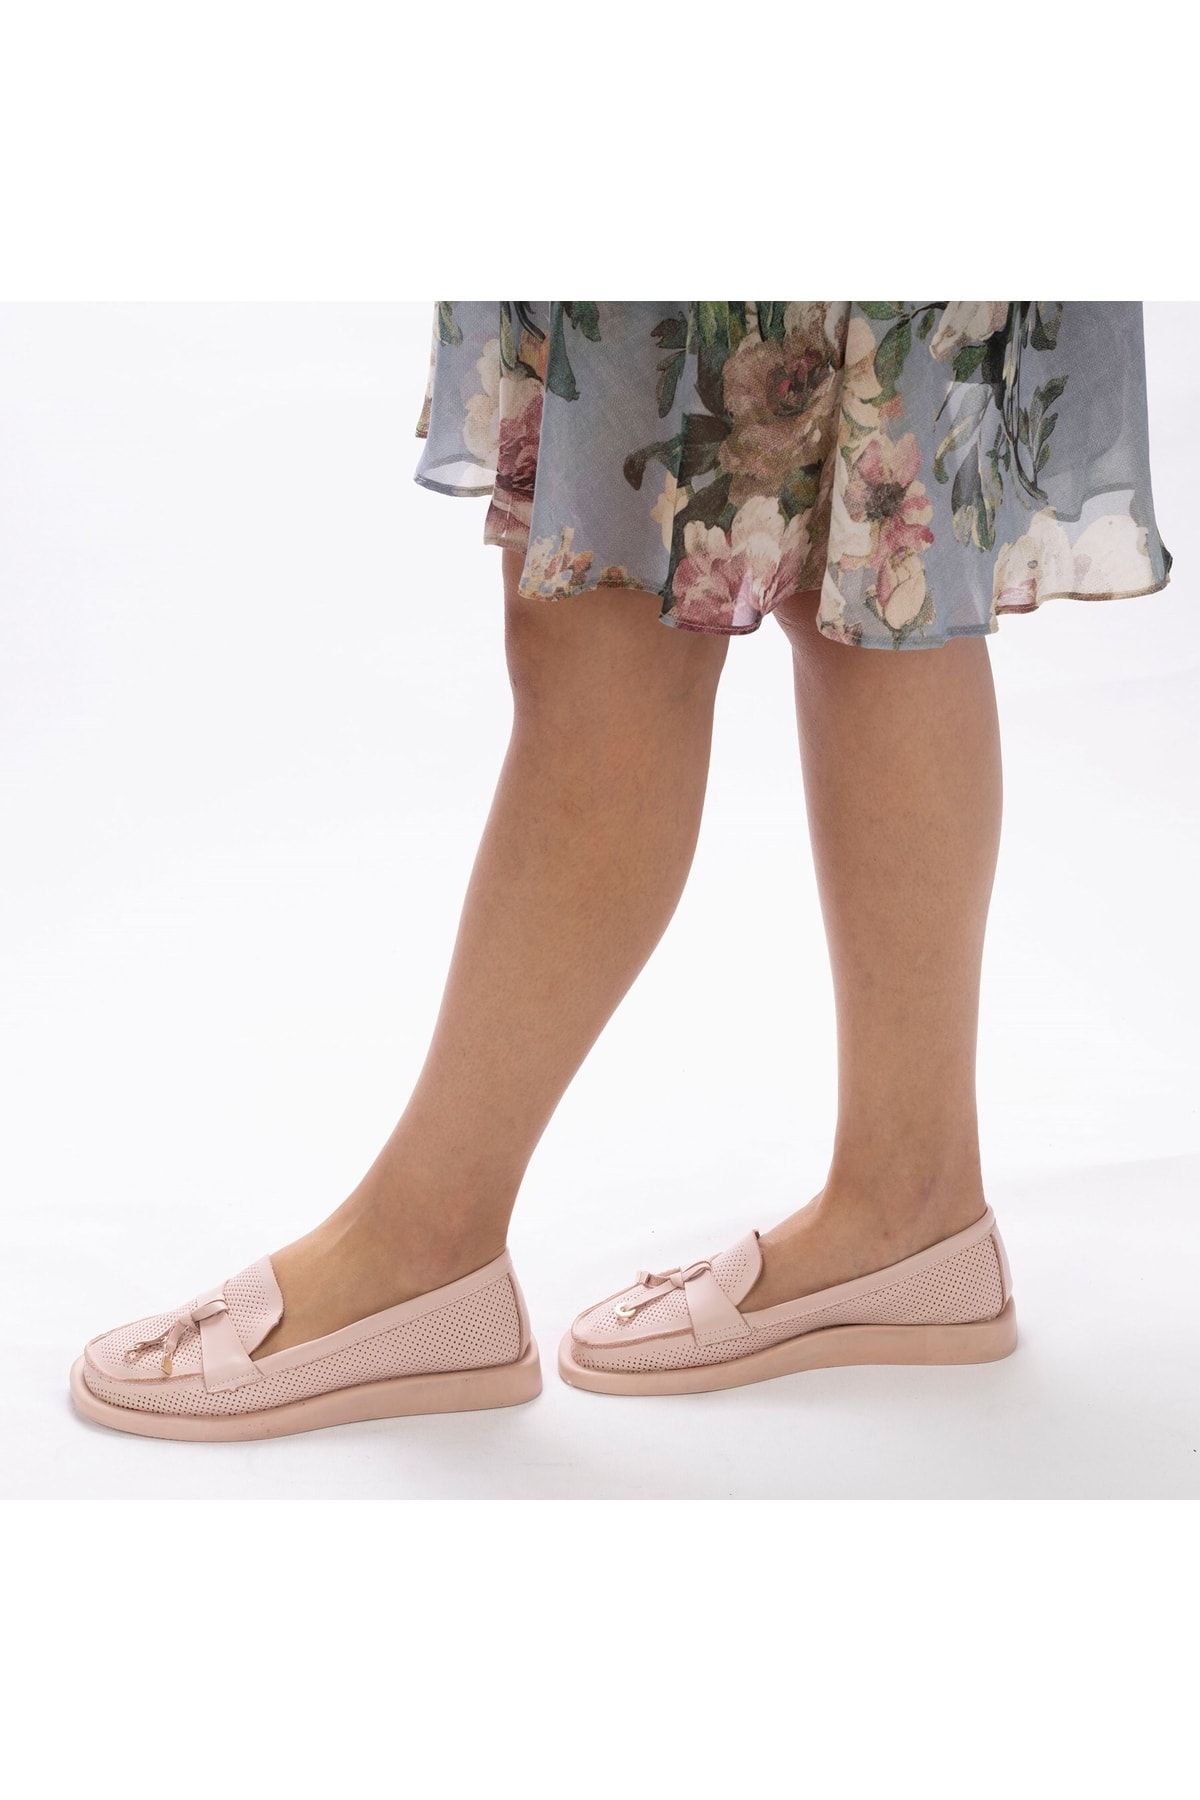 TwoEgoist Kadın Yazlık Babet Hakiki Yumuşak Deri Günlük Pudra Pembe Loafer Babet Ayakkabı